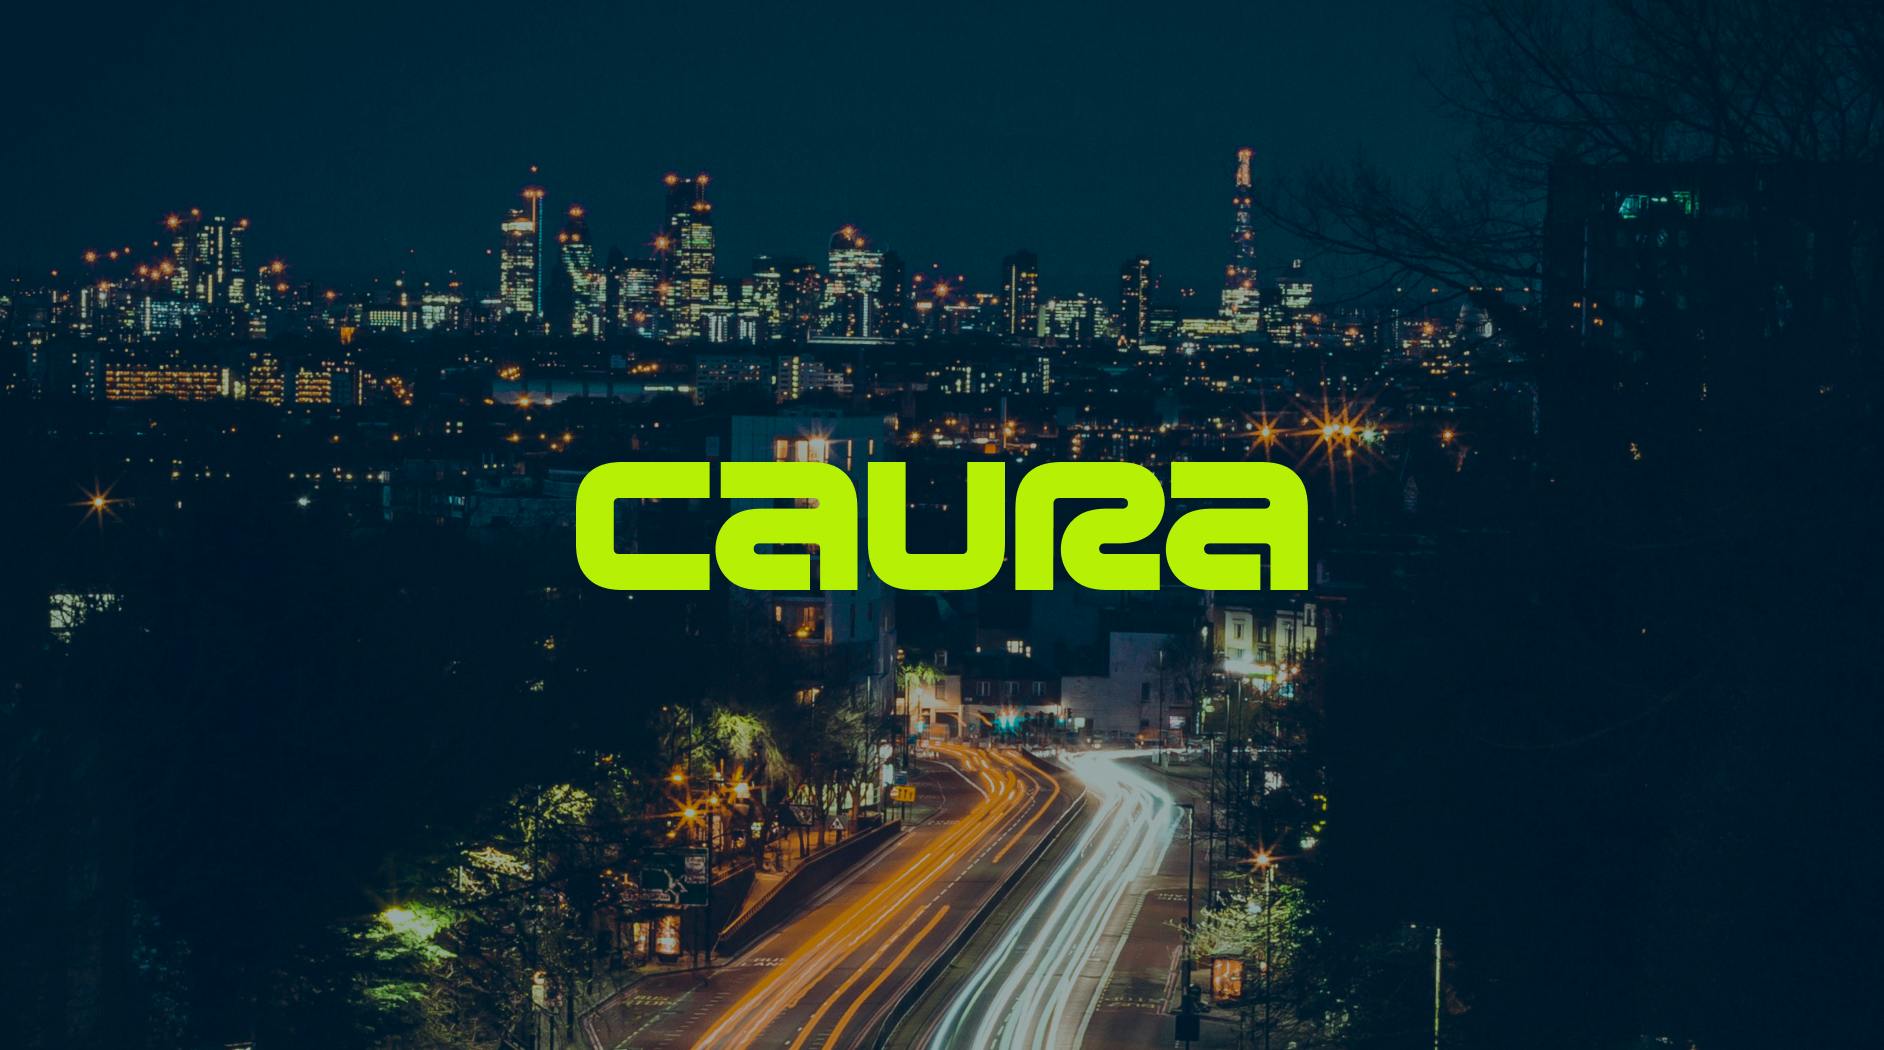 Caura logo on image background